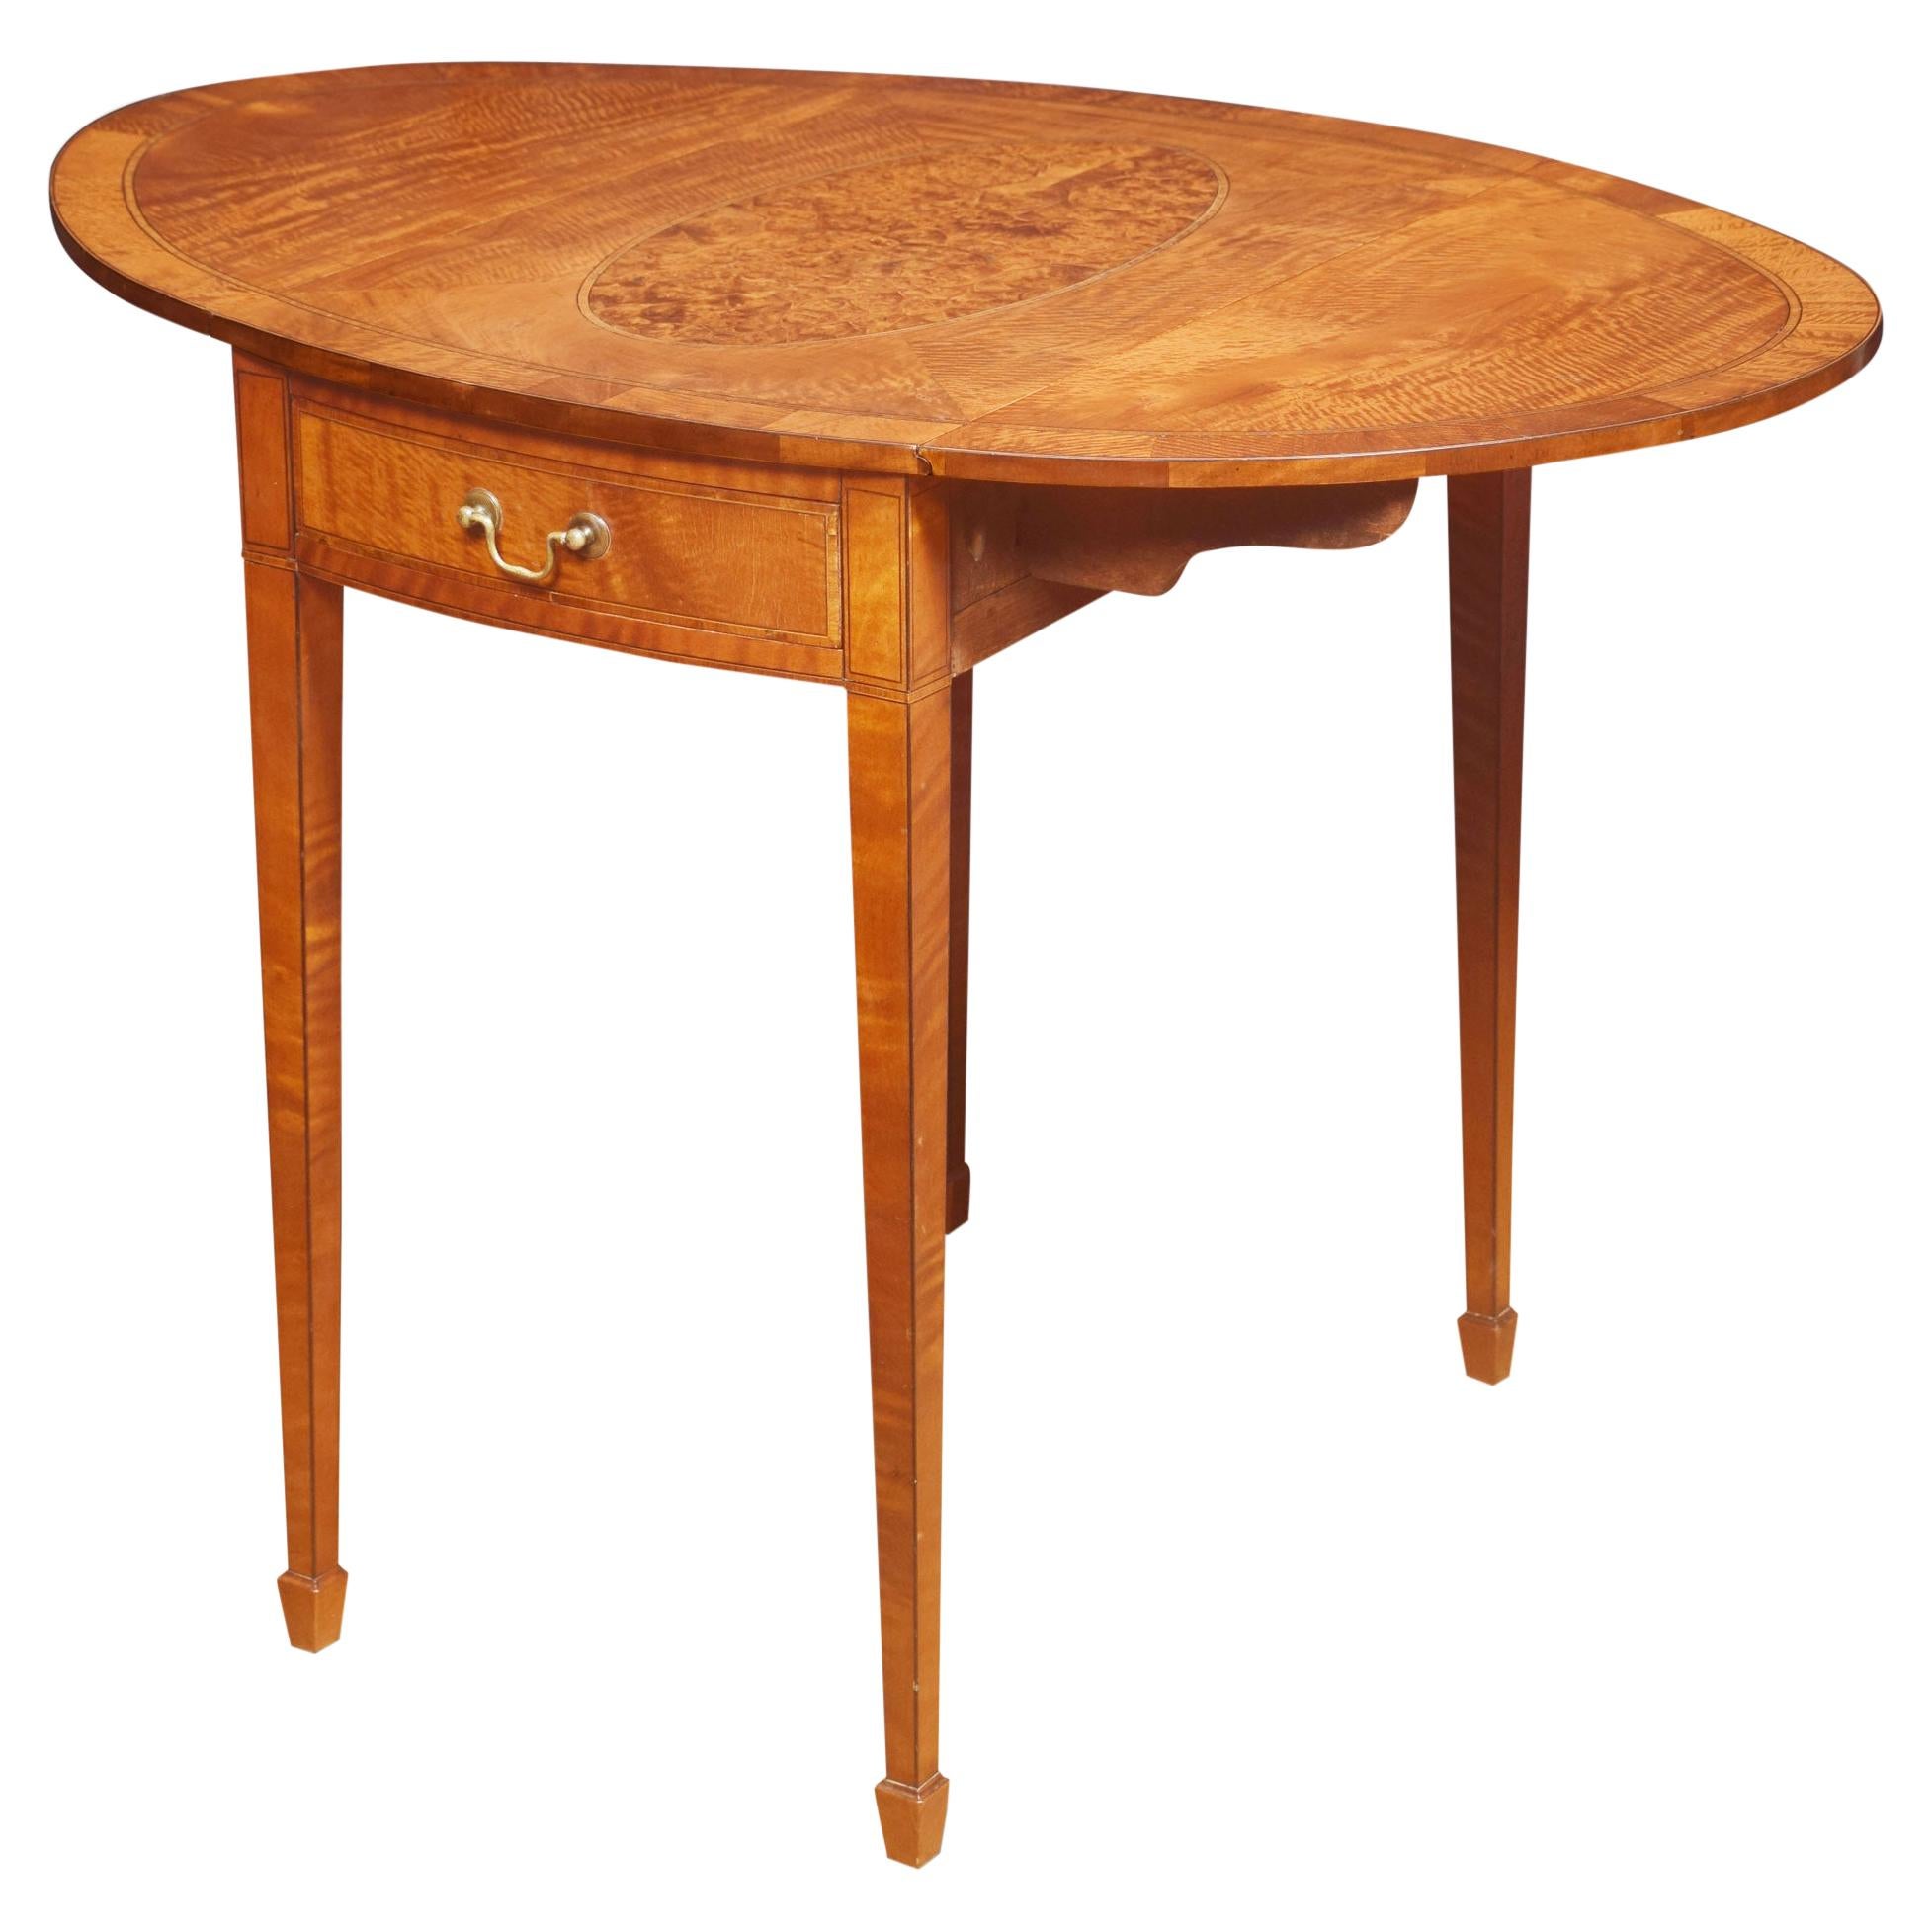 George III Style Satinwood Pembroke Table